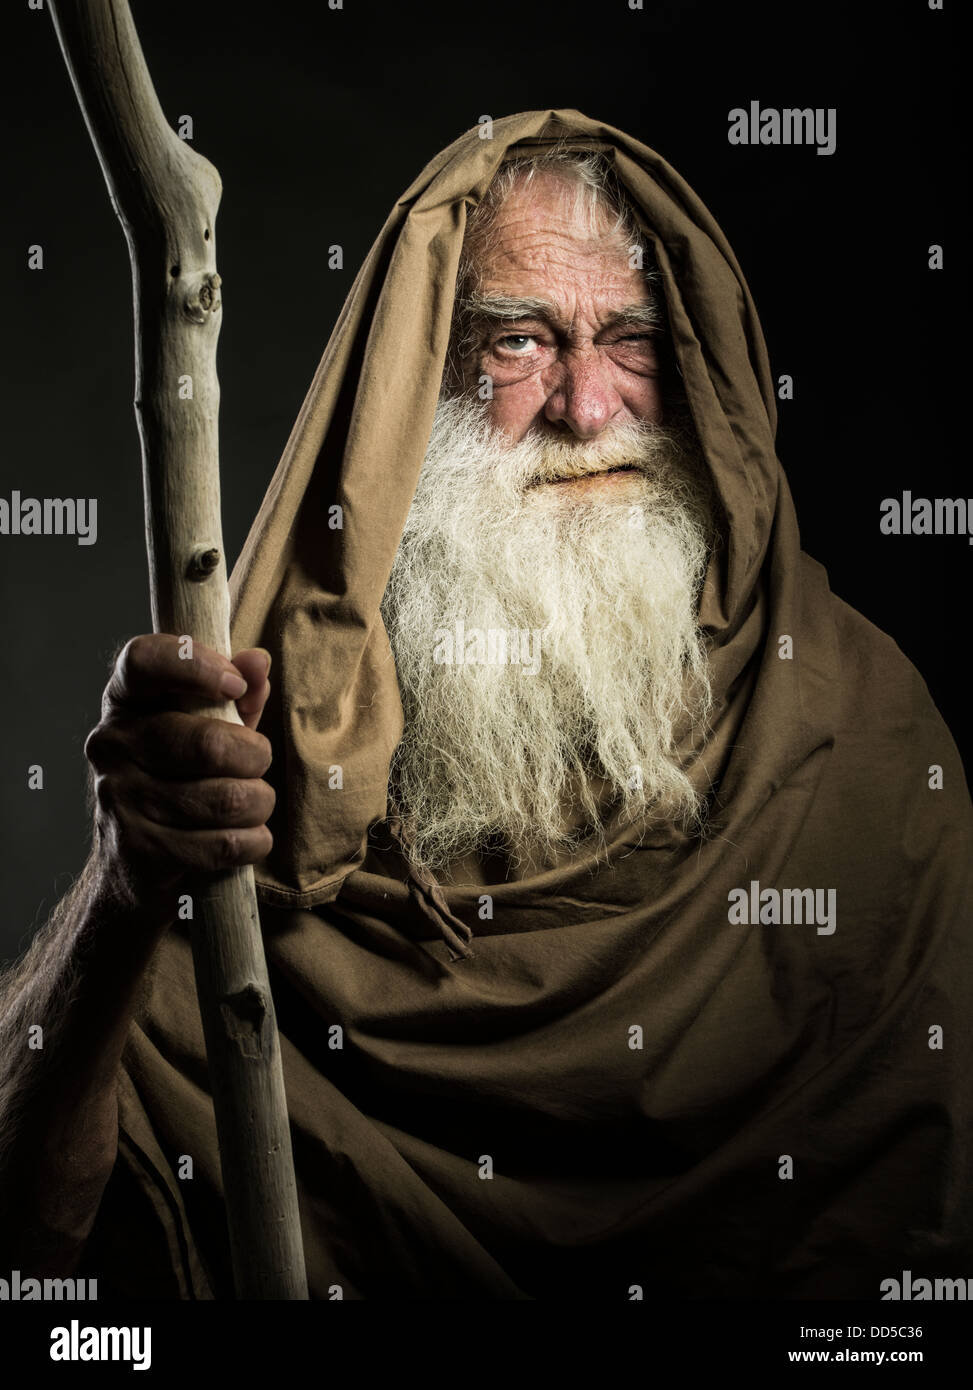 Hombre viejo con barba blanca y manto de personal parece asistente / Gandalf / Moisés / Dumbledore Foto de stock